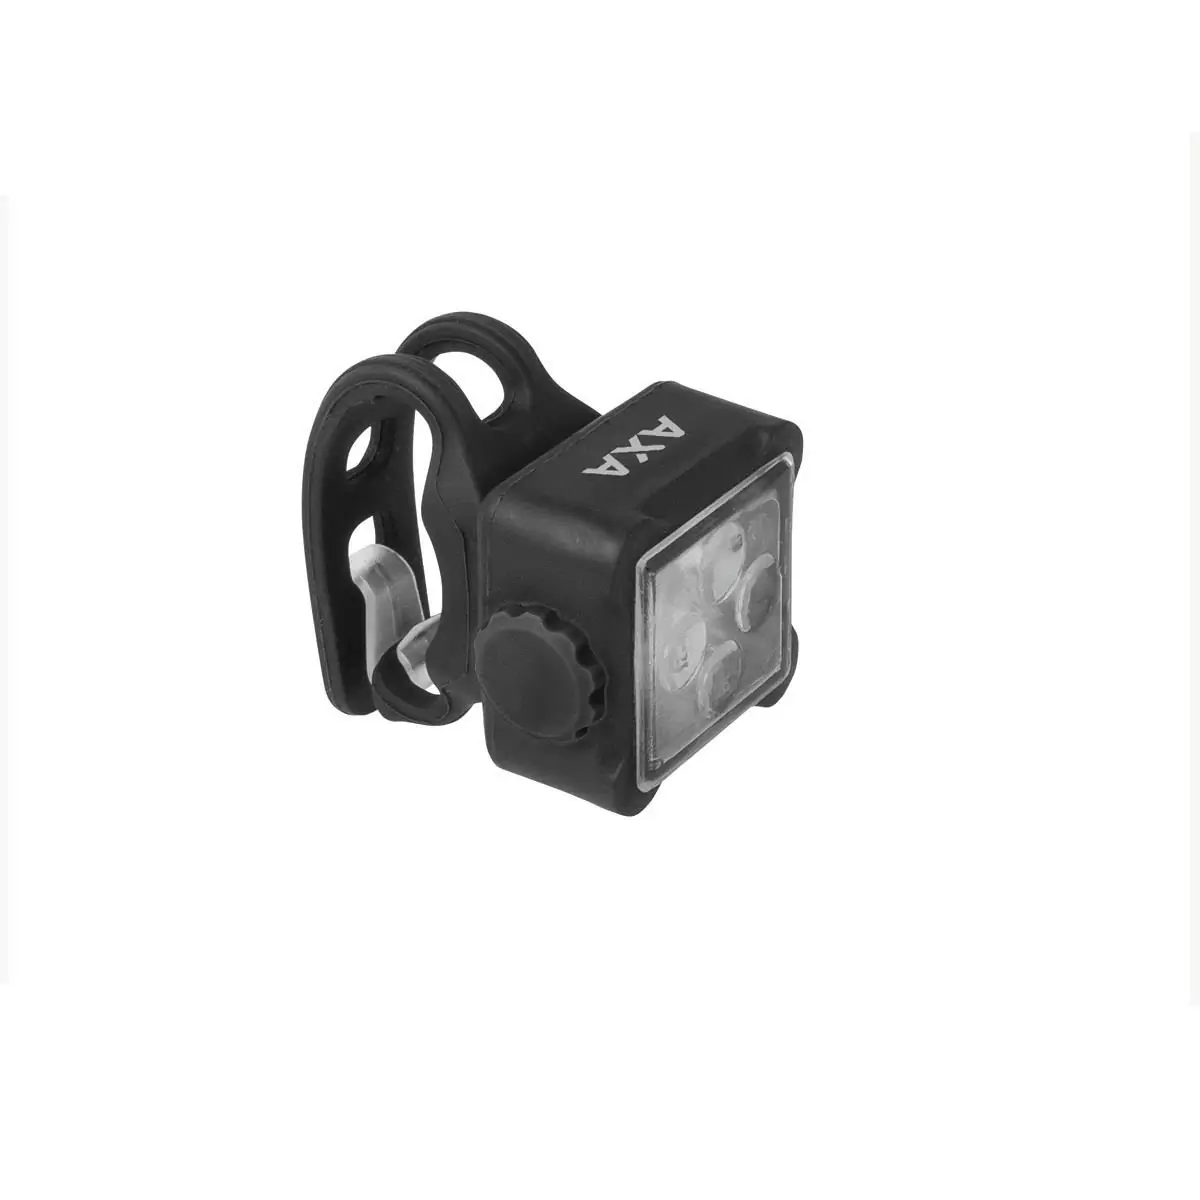 Kit Niteline 44-R luz dianteira e traseira USB #1